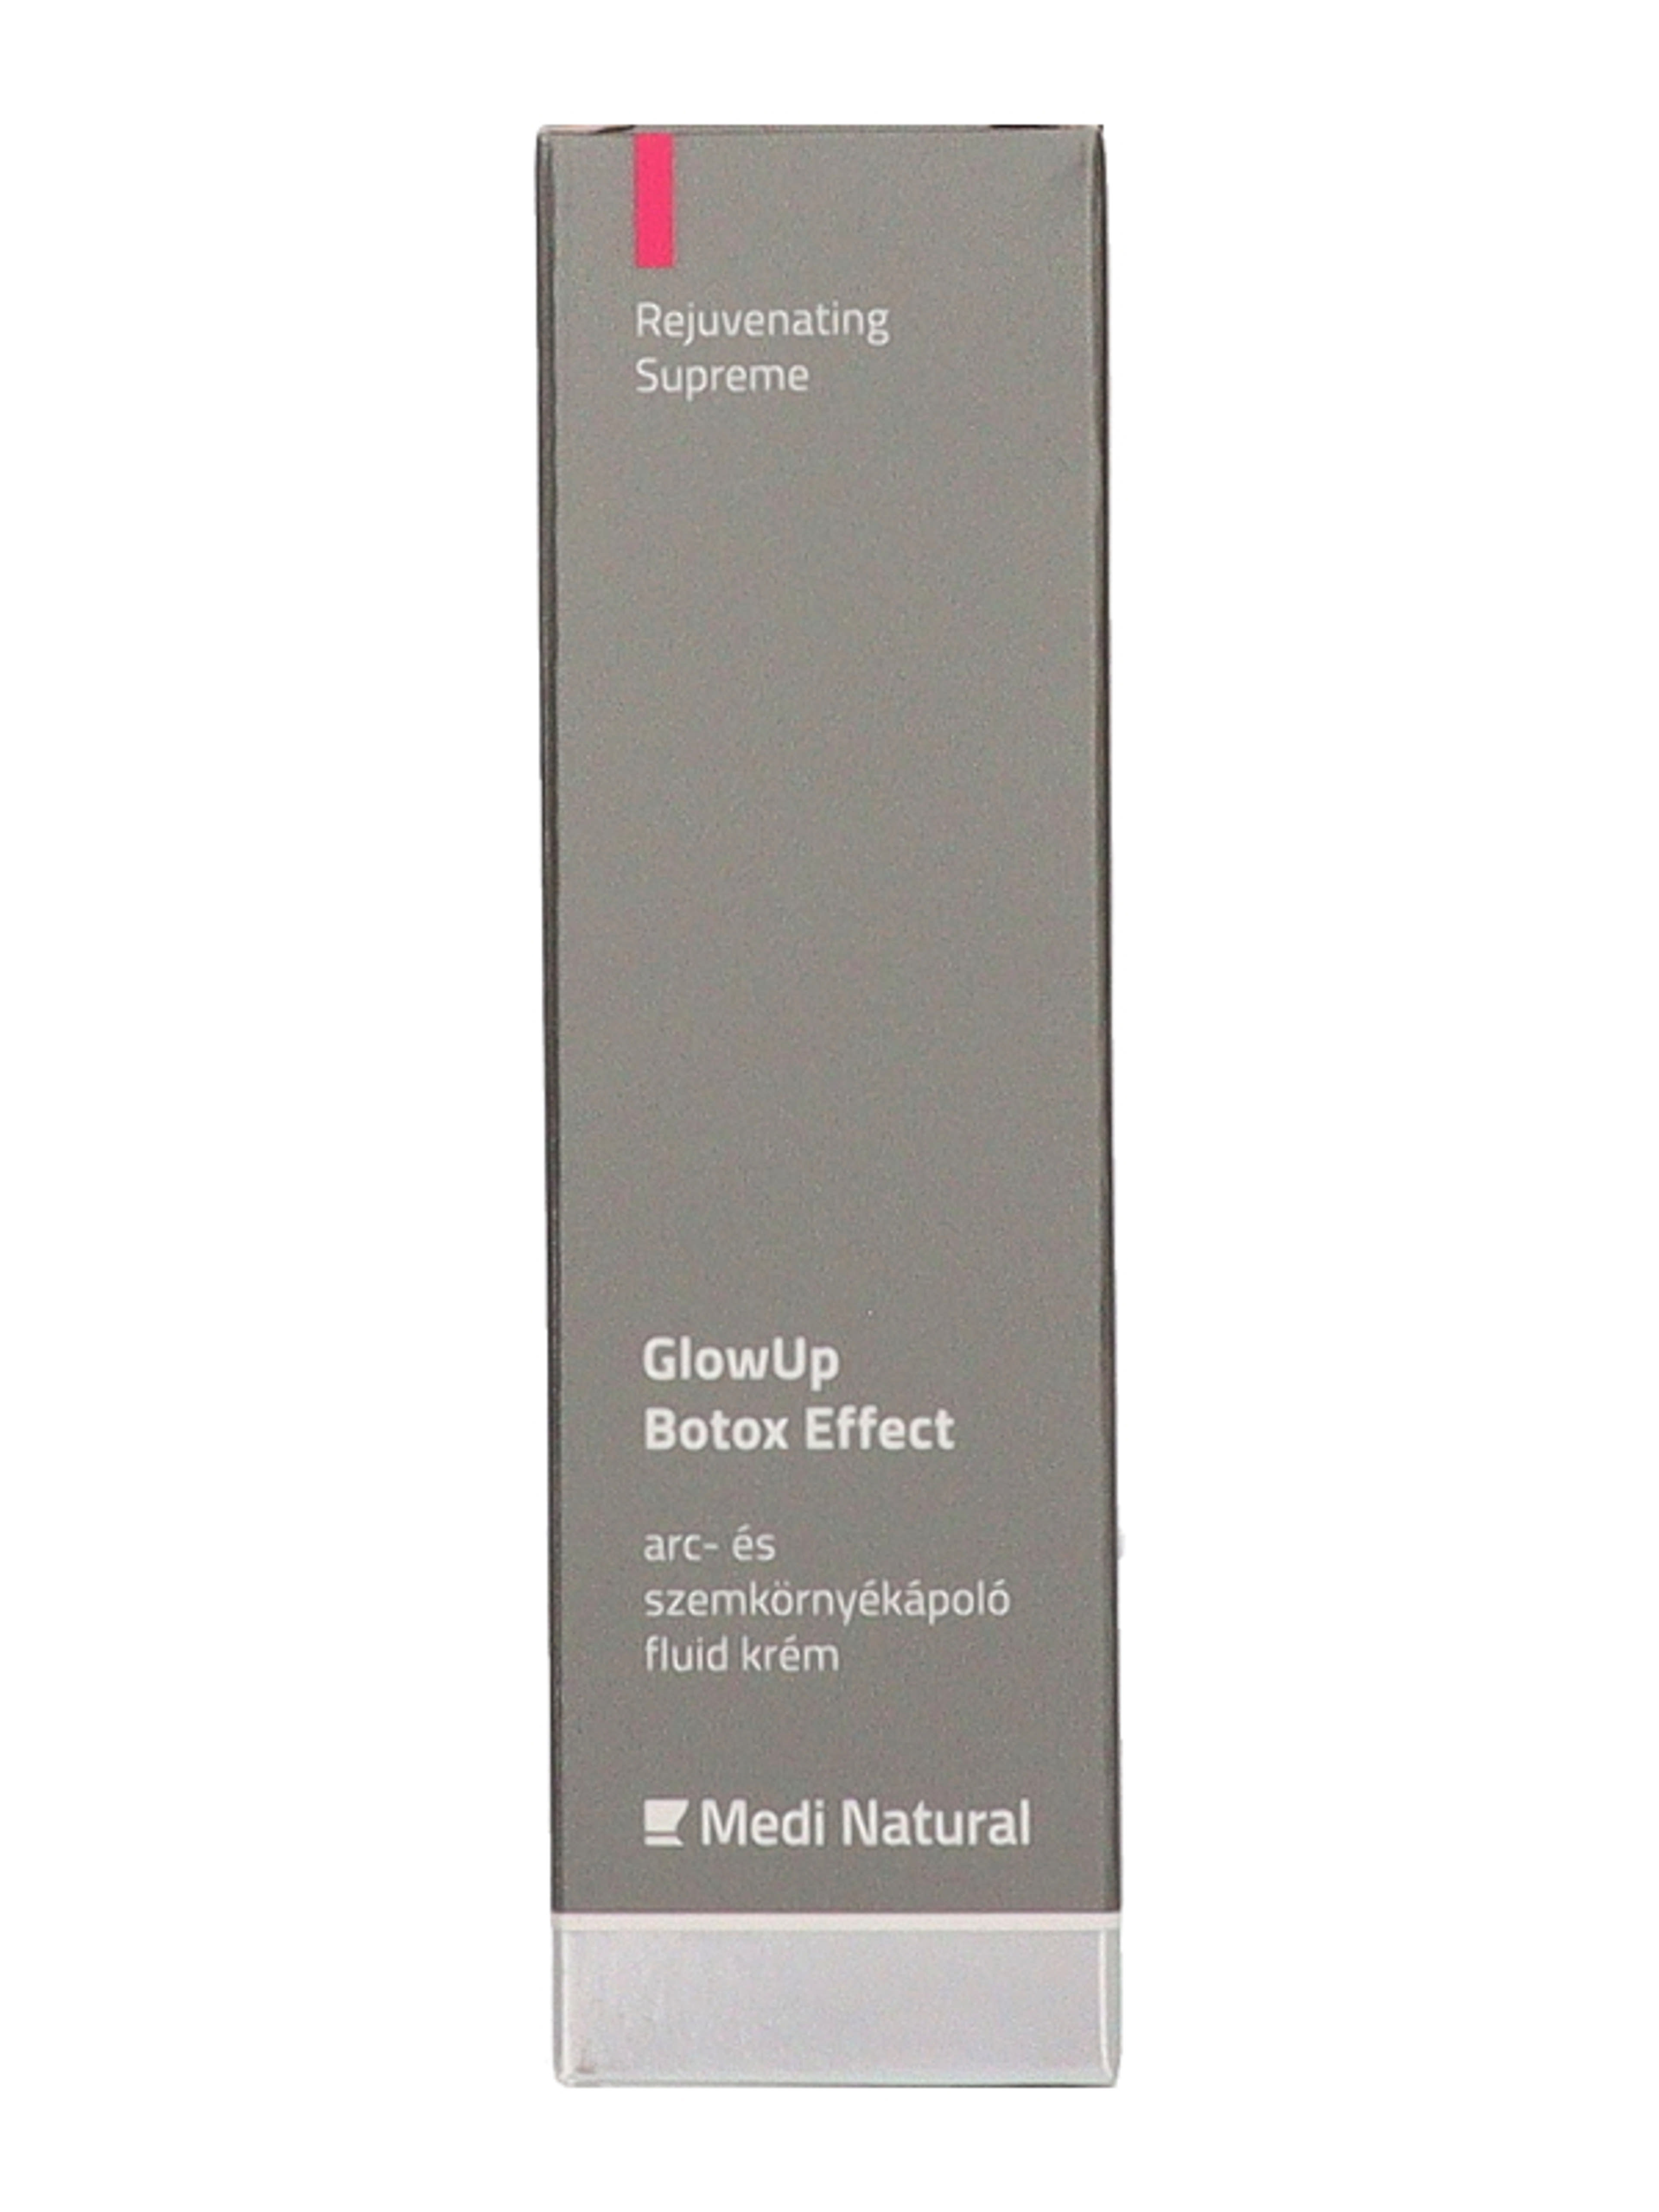 Medi Natural GlowUp Botox Effect arc- és szemkörnyékápoló fluid krém - 30m-2